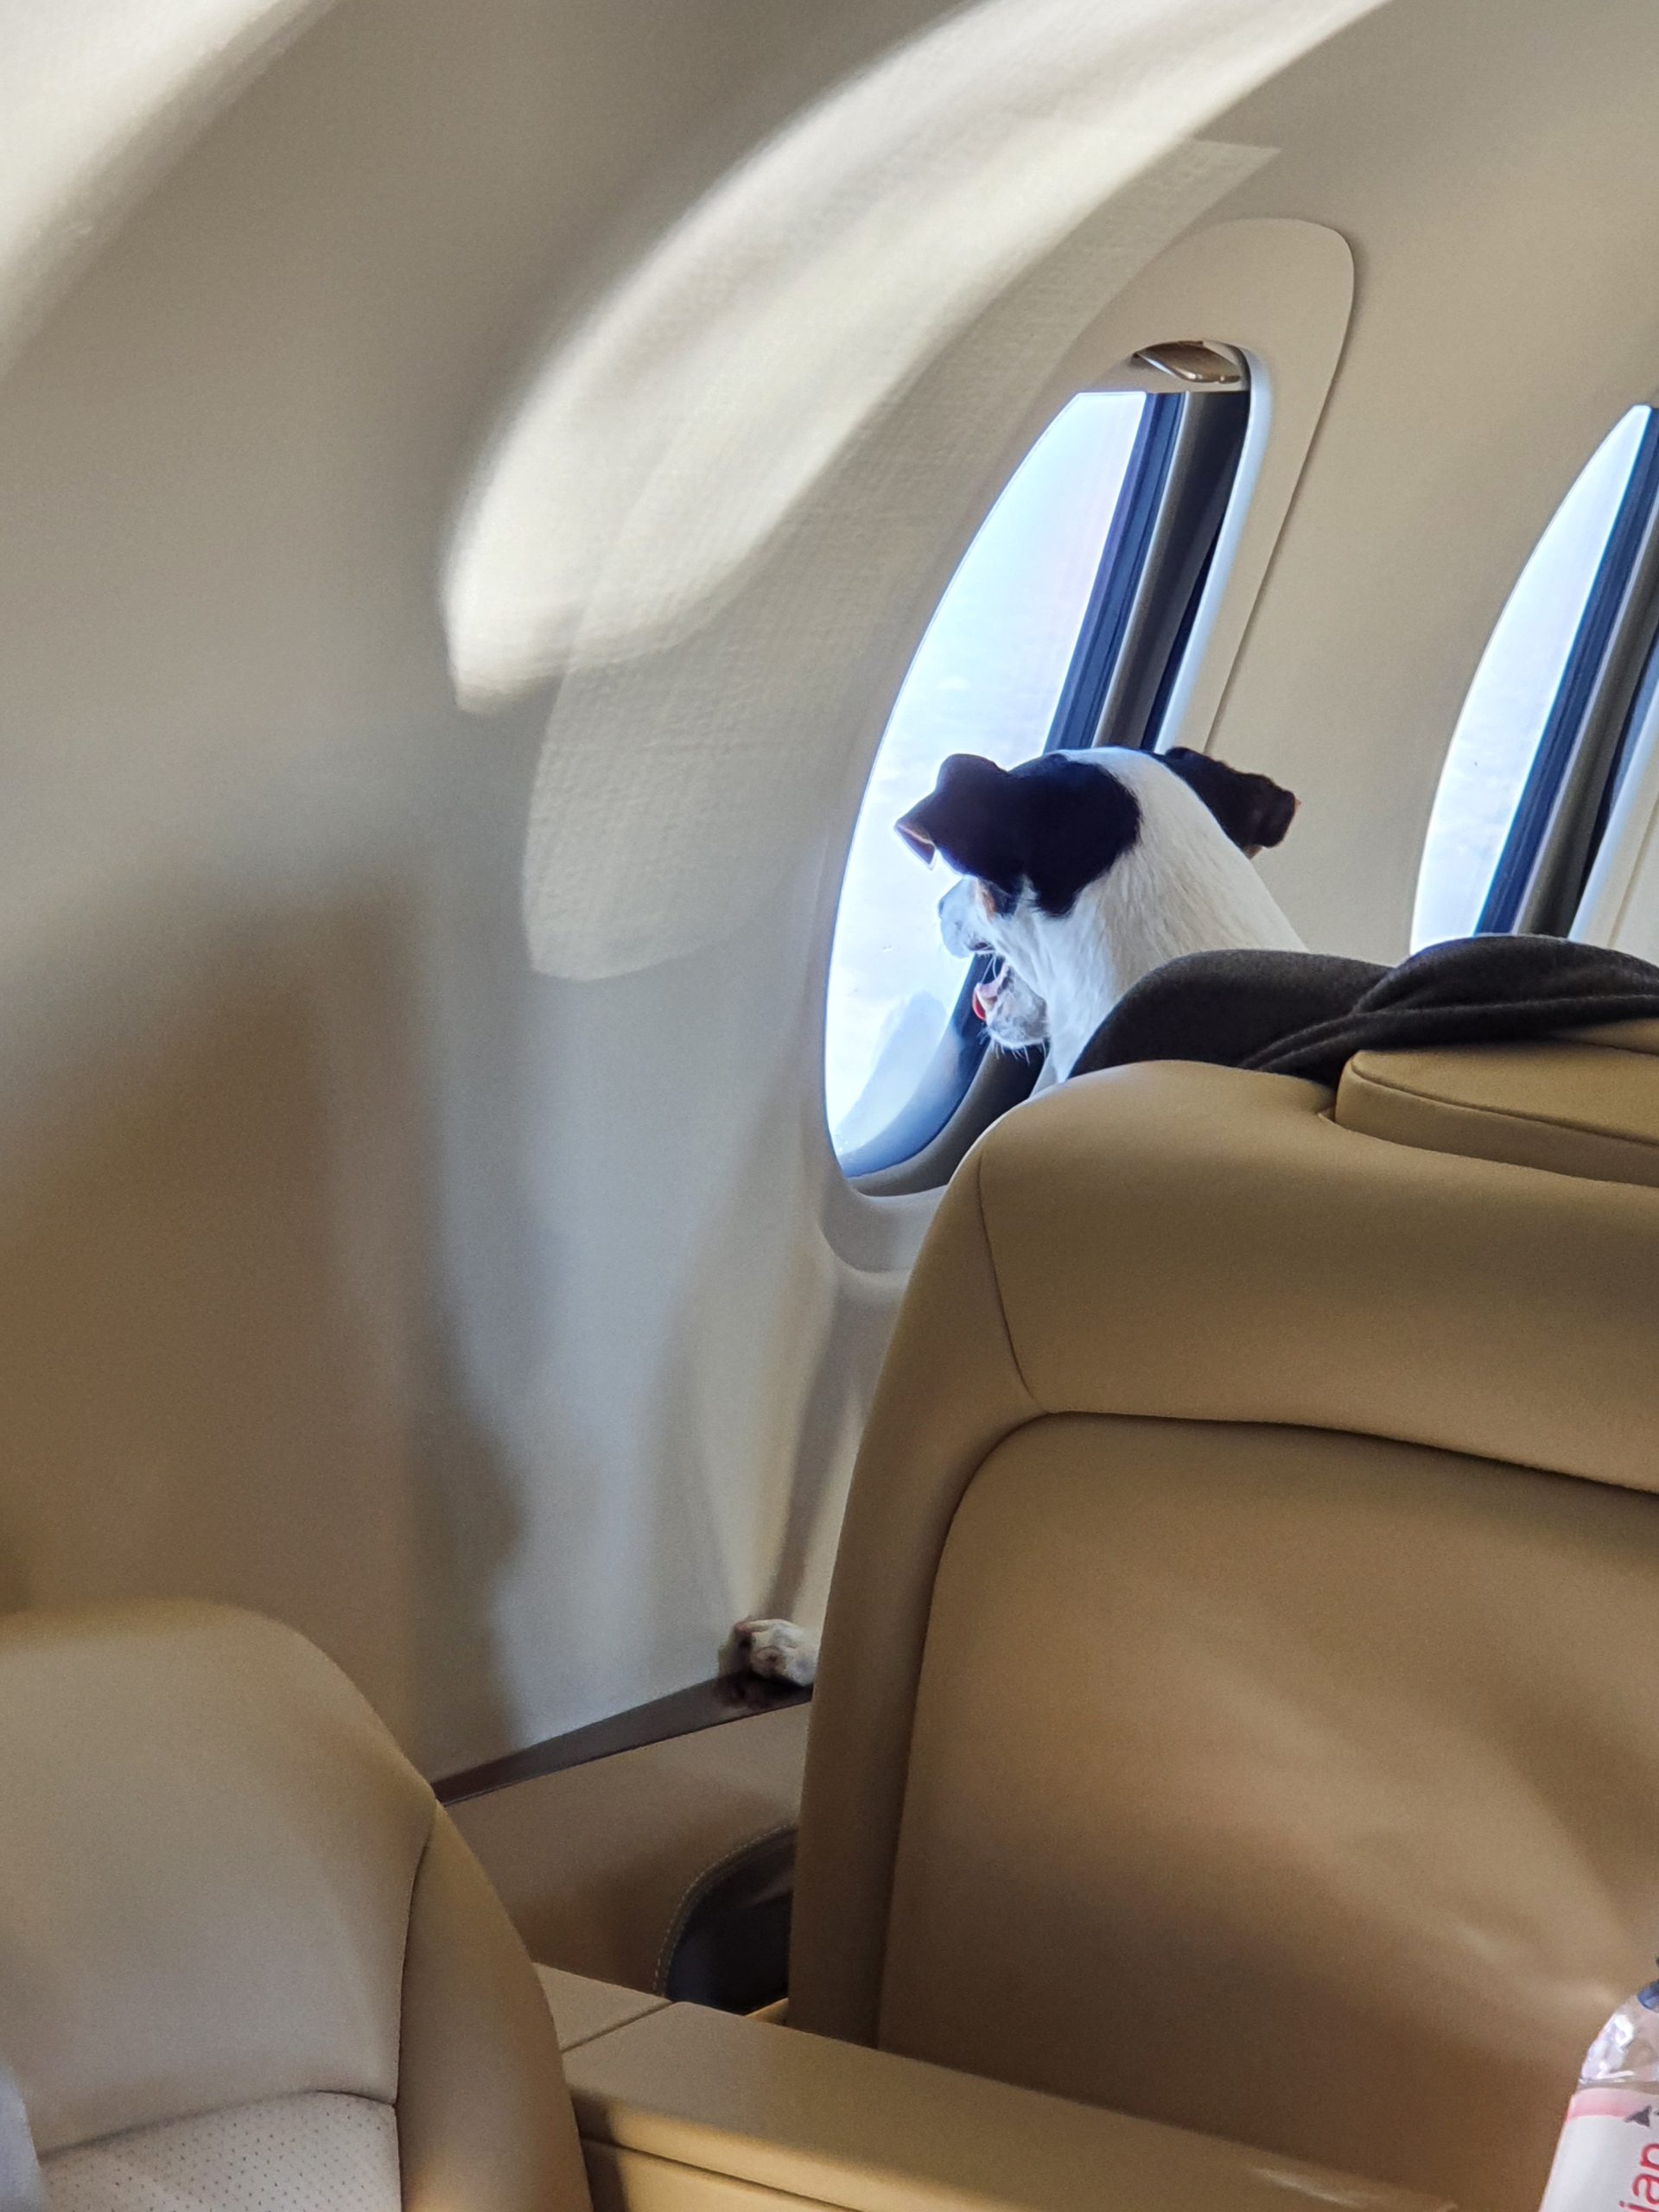 Foto eines Hundes, der aus dem Fenster eines Privatjets schaut